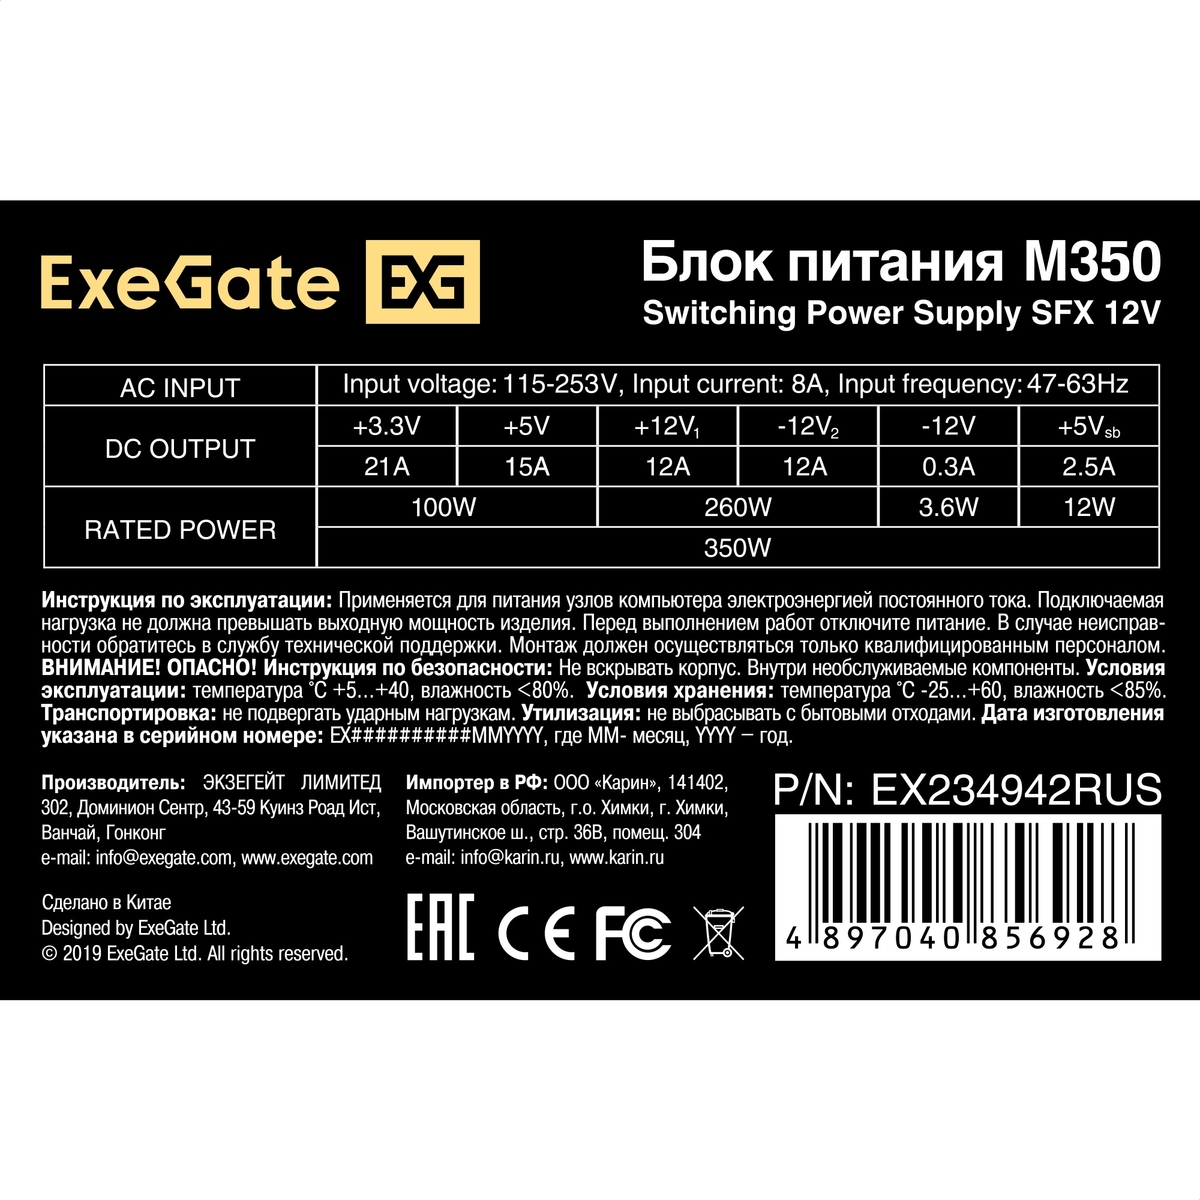   350W ExeGate M350